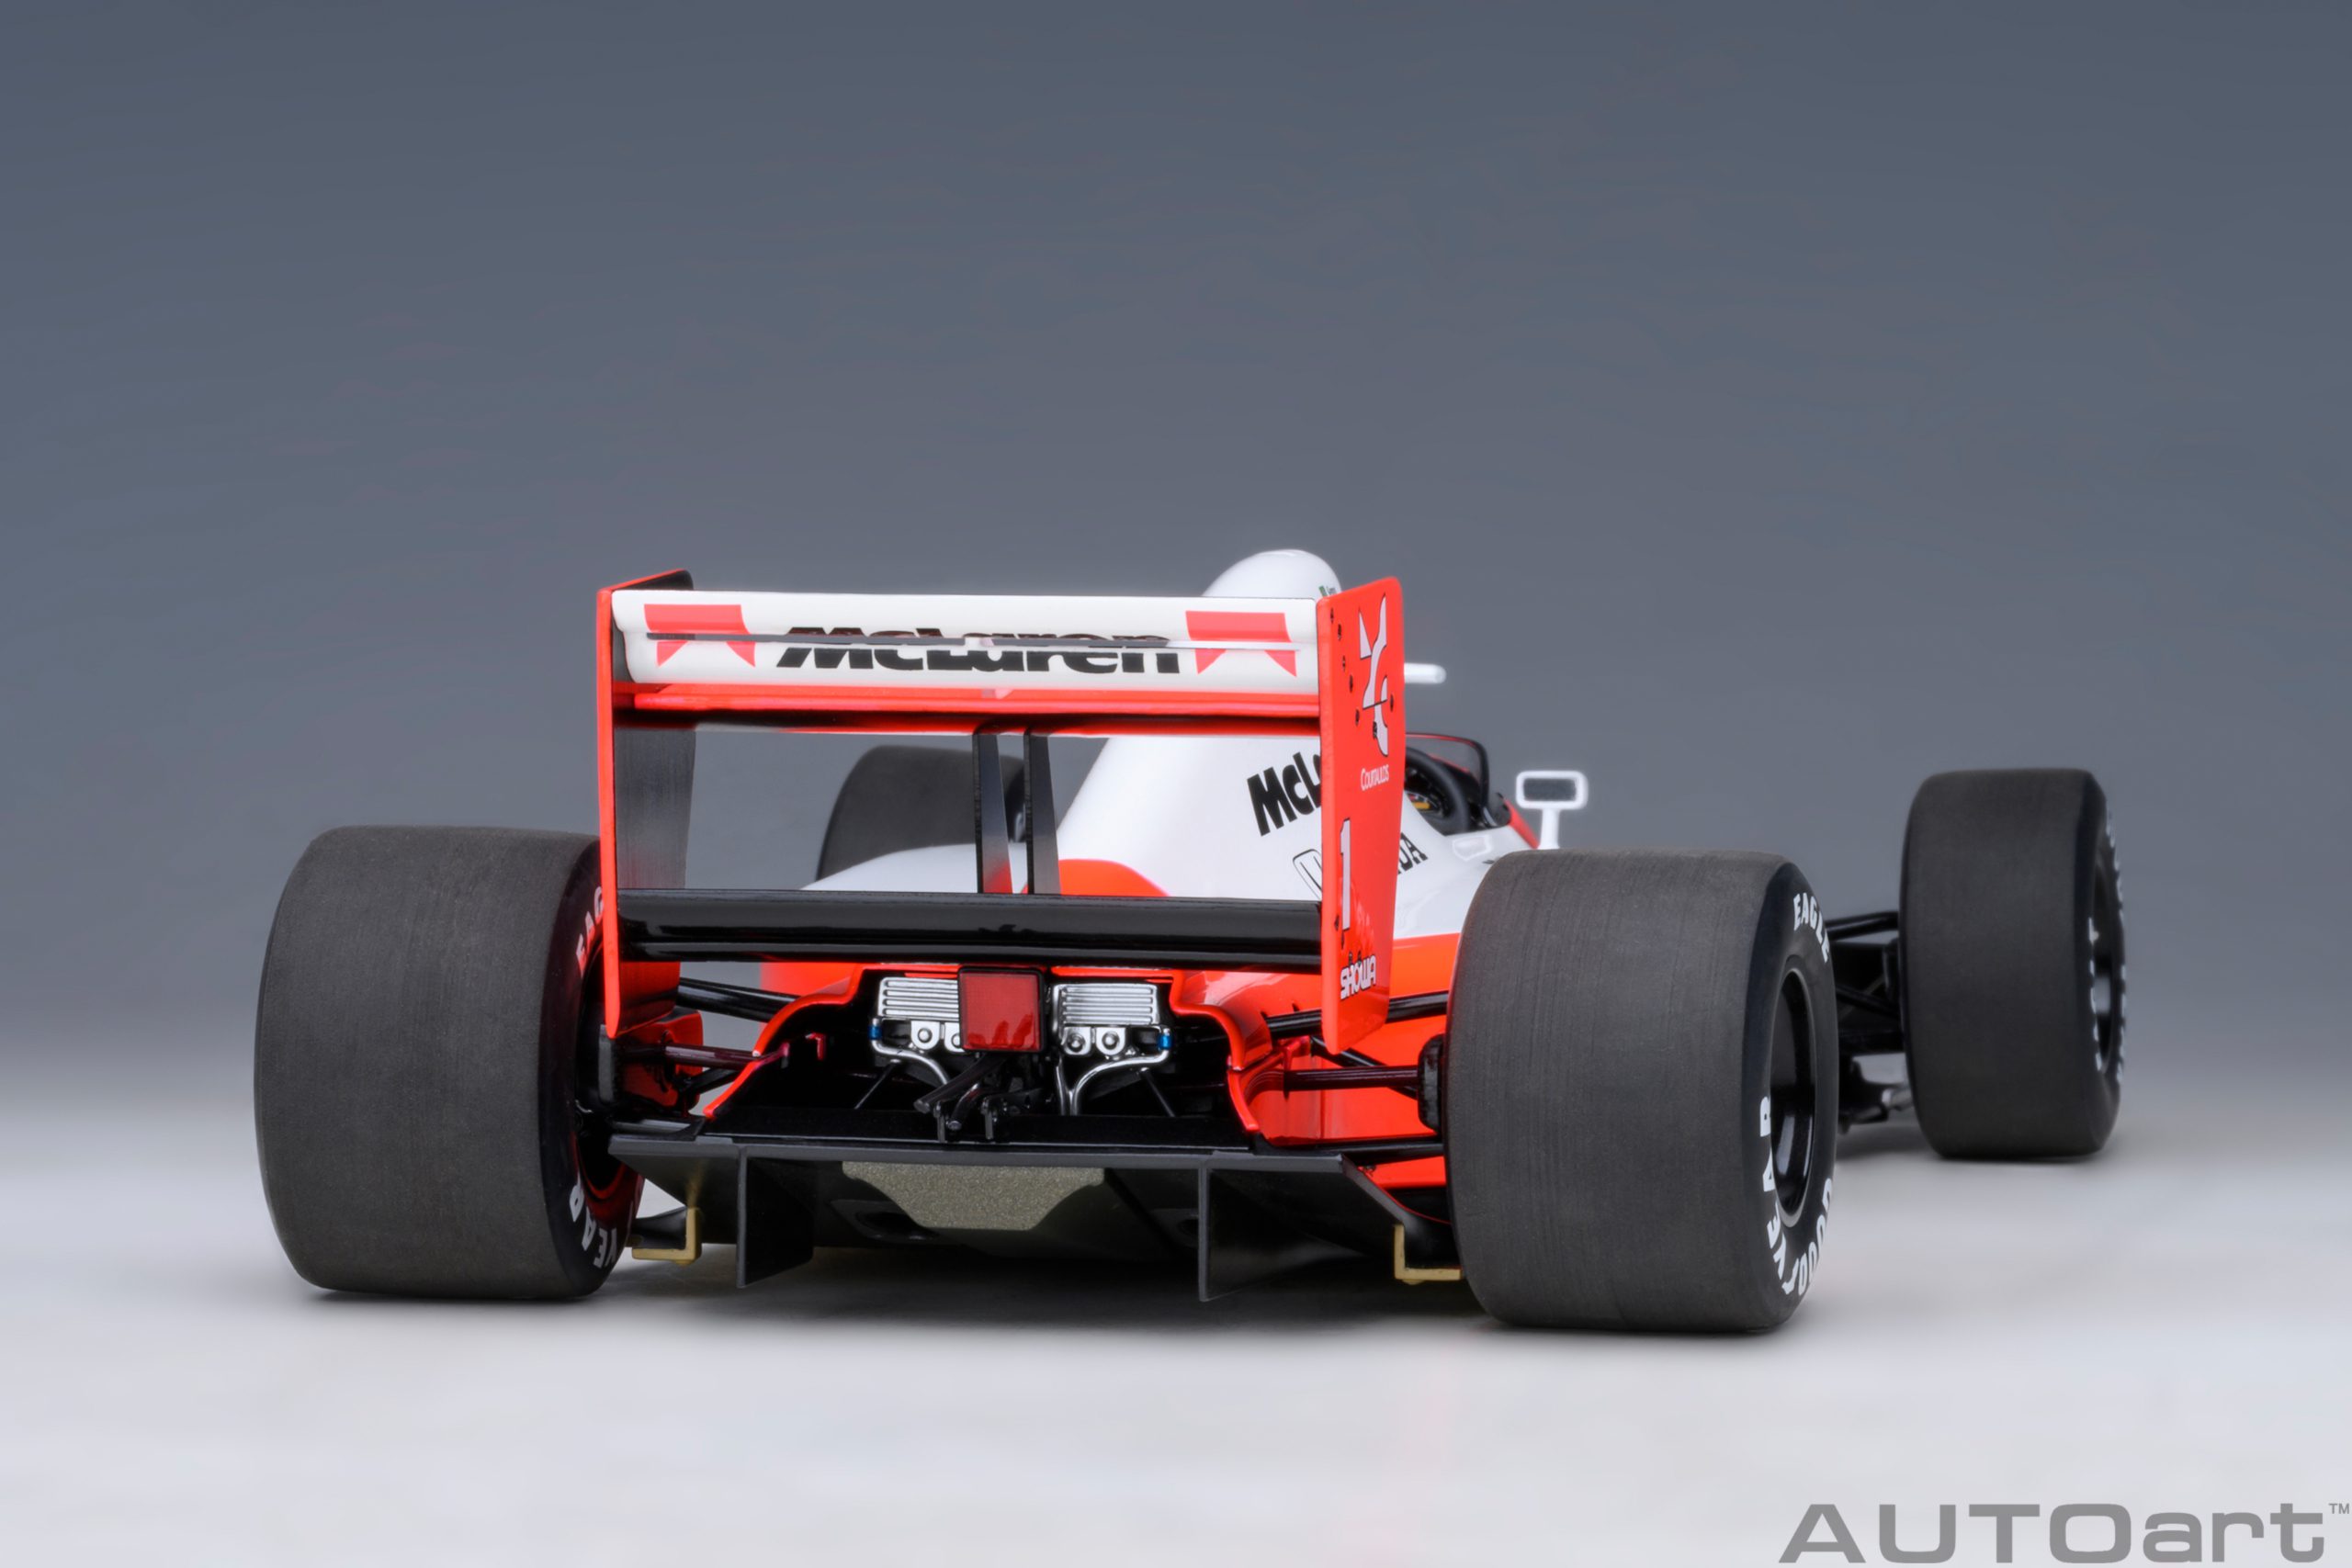 autoart-89140-9-McLaren-Honda-MP-4-6-Japanese-GP-1991-Ayrton-Senna-da-Silva-No-1-Sempre